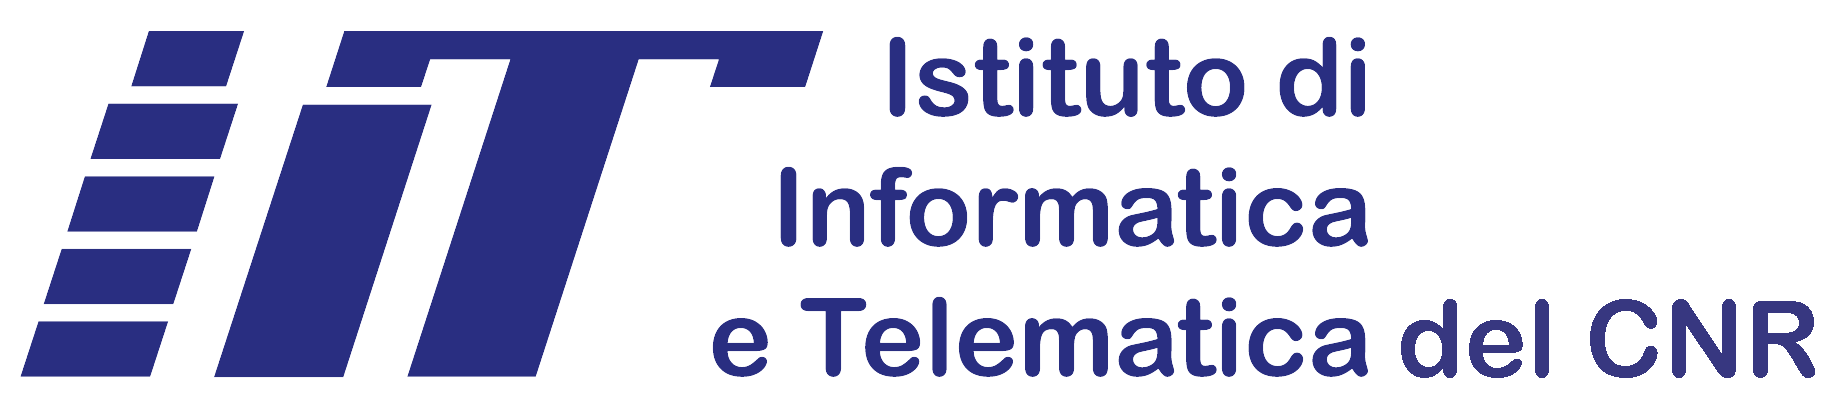 IIT (Istituto di Informatica e Telematica del CNR)